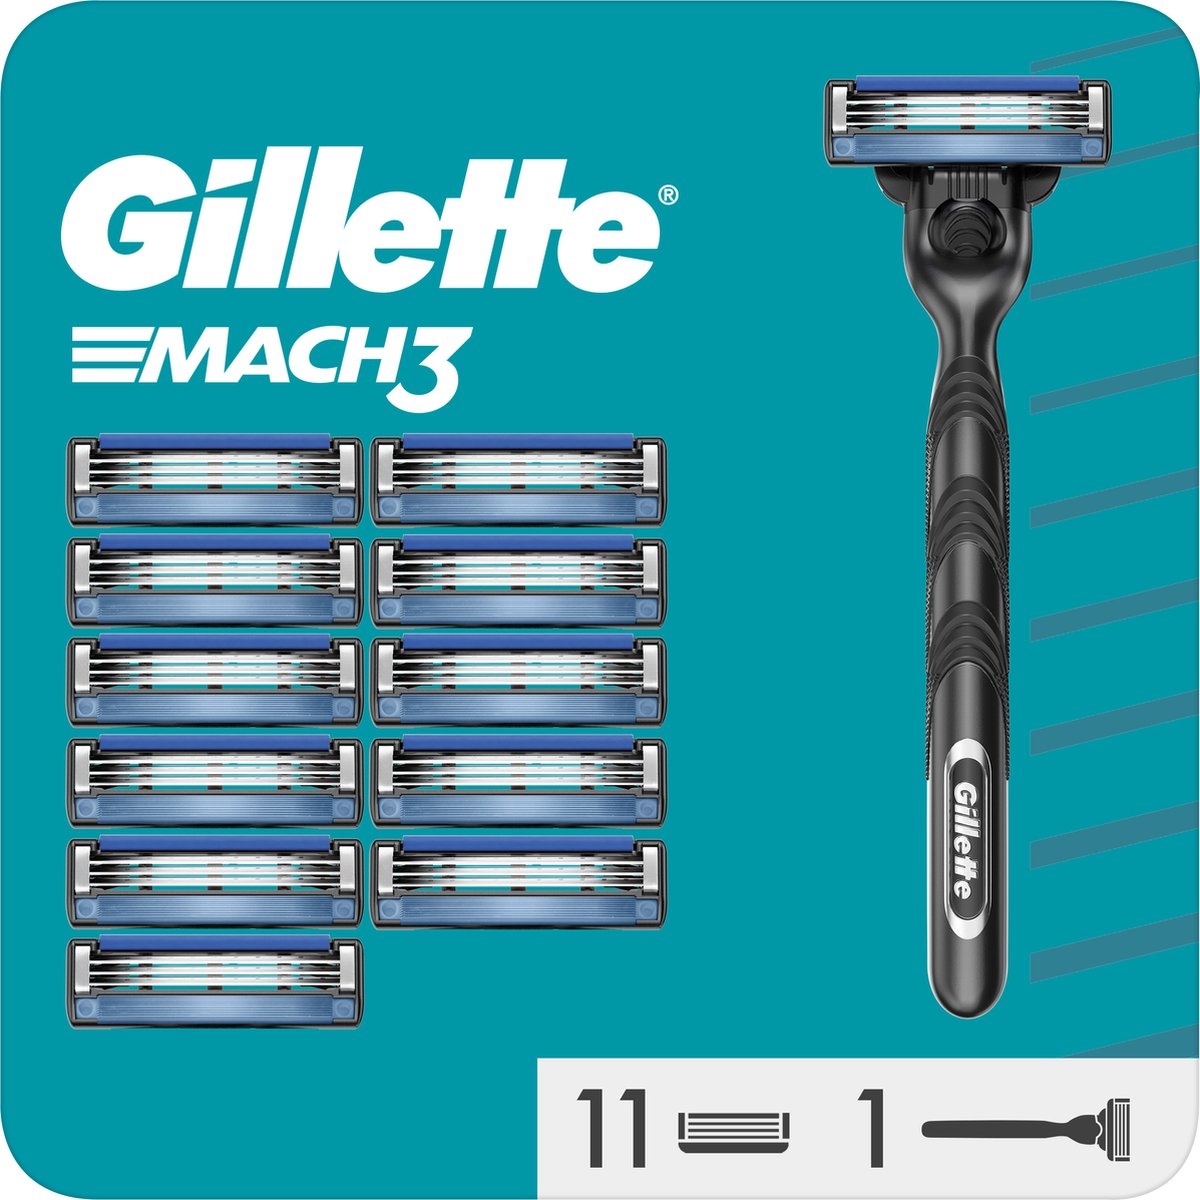 Gillette Mach3 - 1 Men's Razor - 12 Razor Blades - Packaging damaged